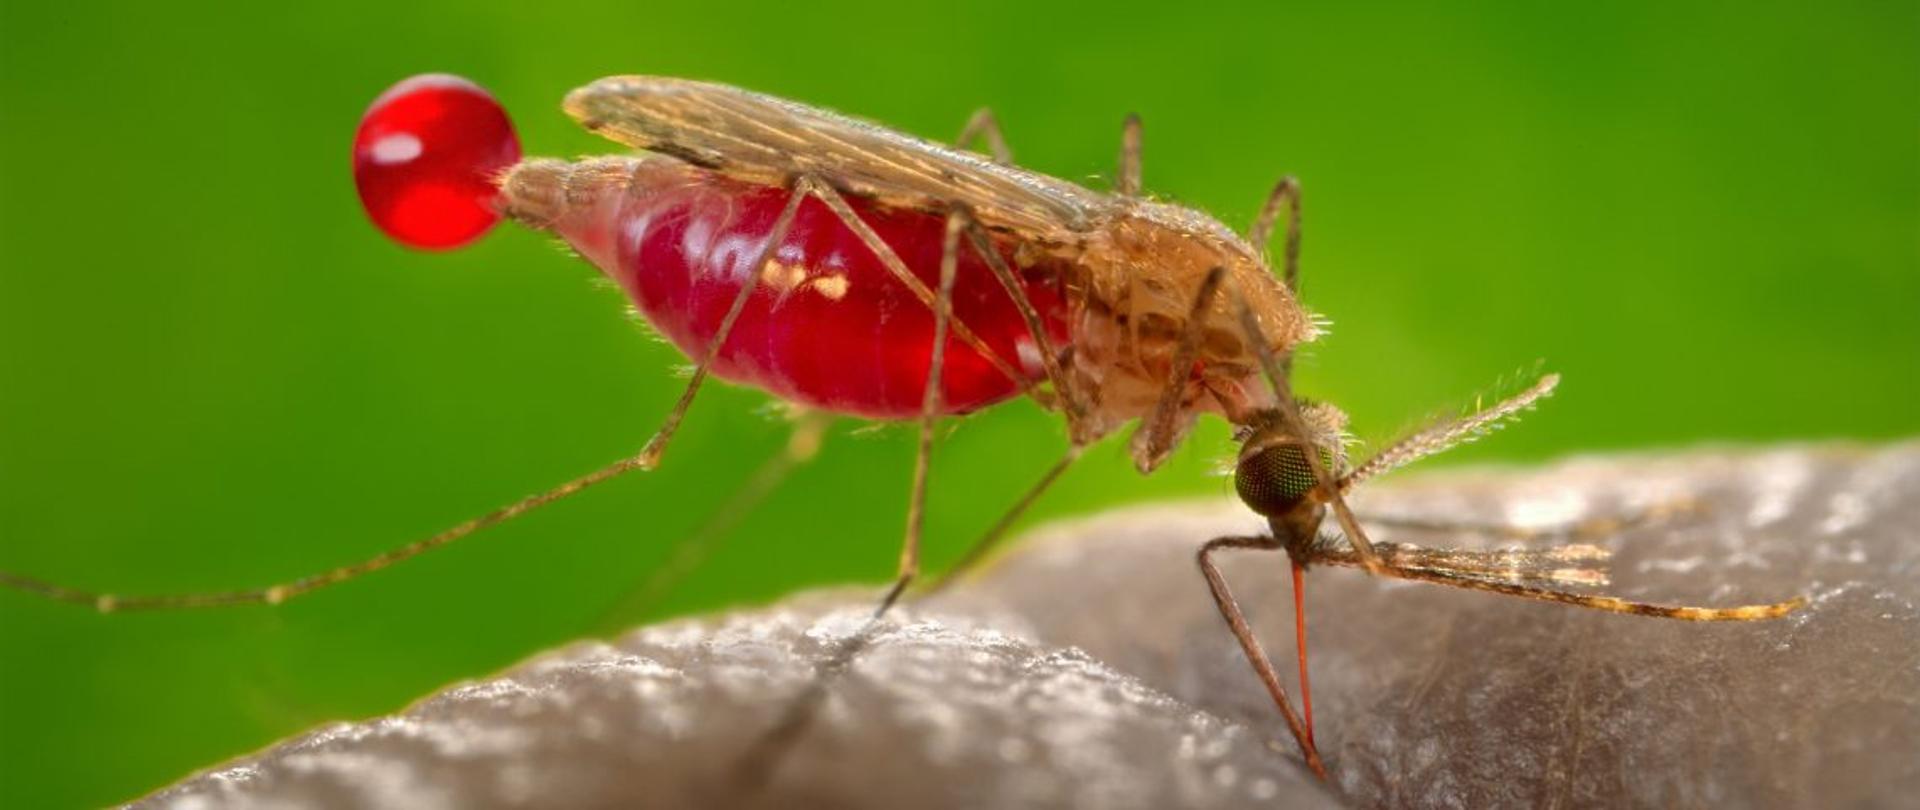 Malaria - komar